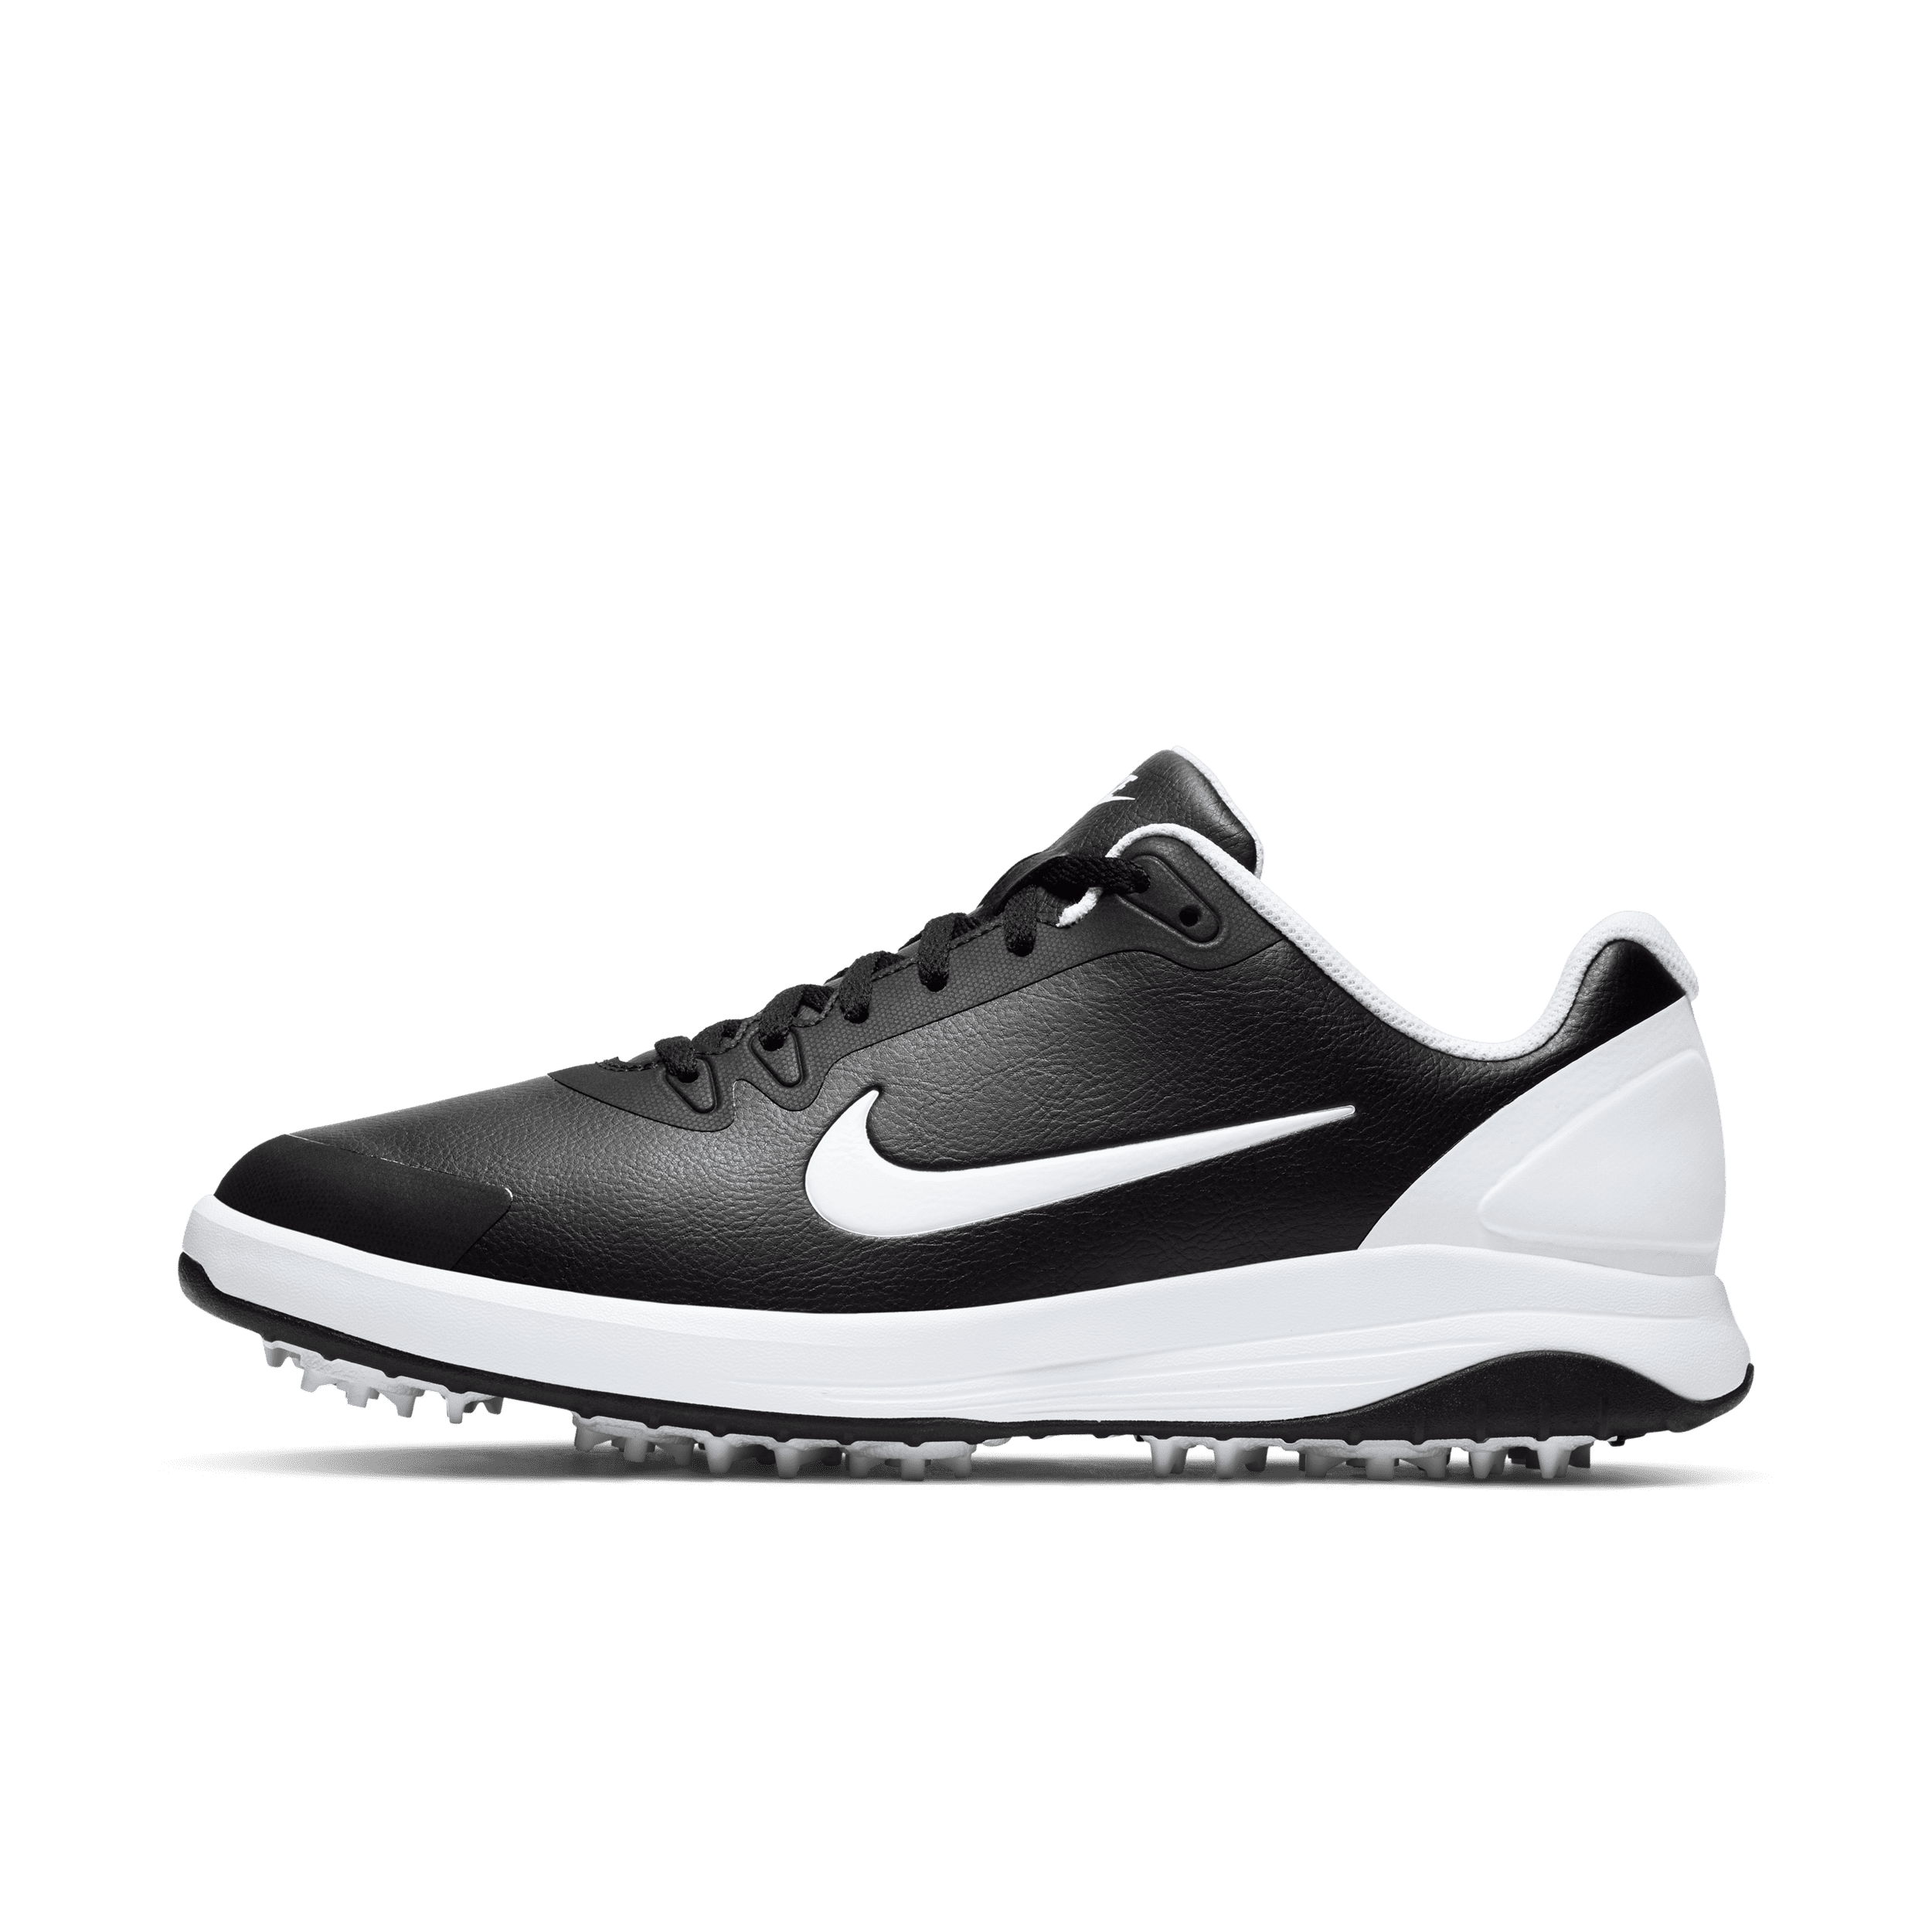 Nike Infinity G-golfsko - sort